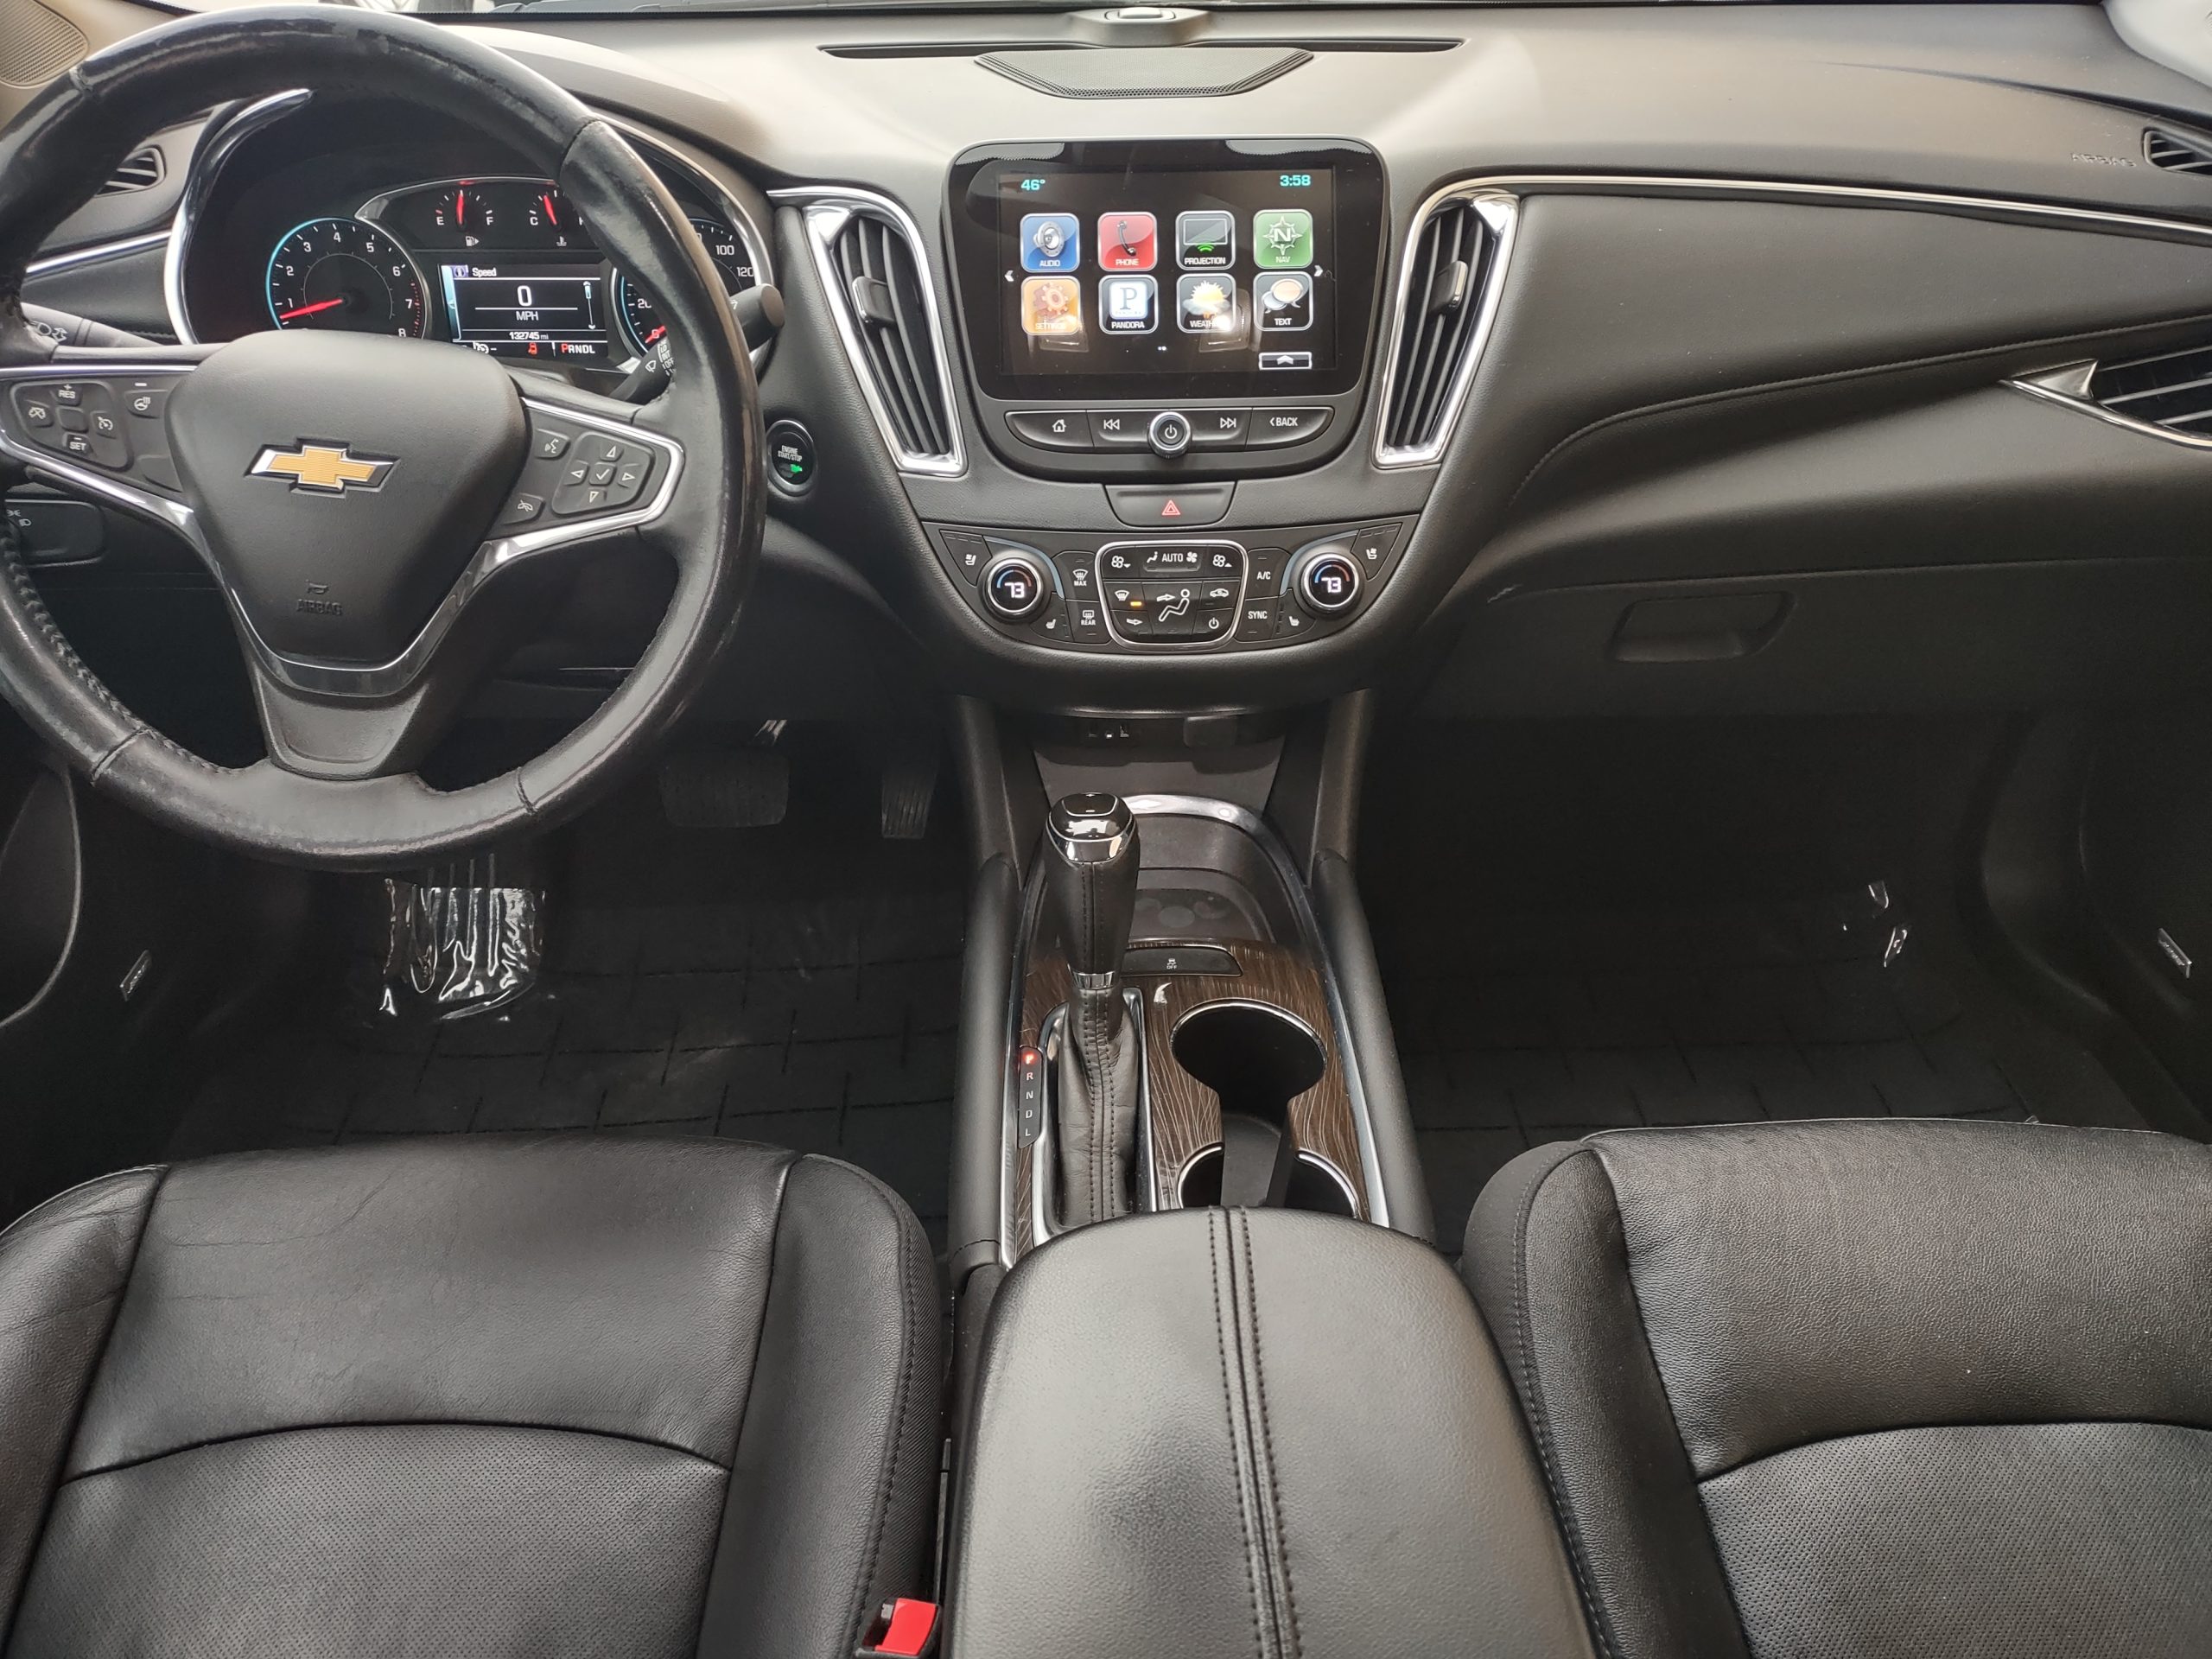 Used 2016 Chevrolet Malibu Premier Sedan for sale in 